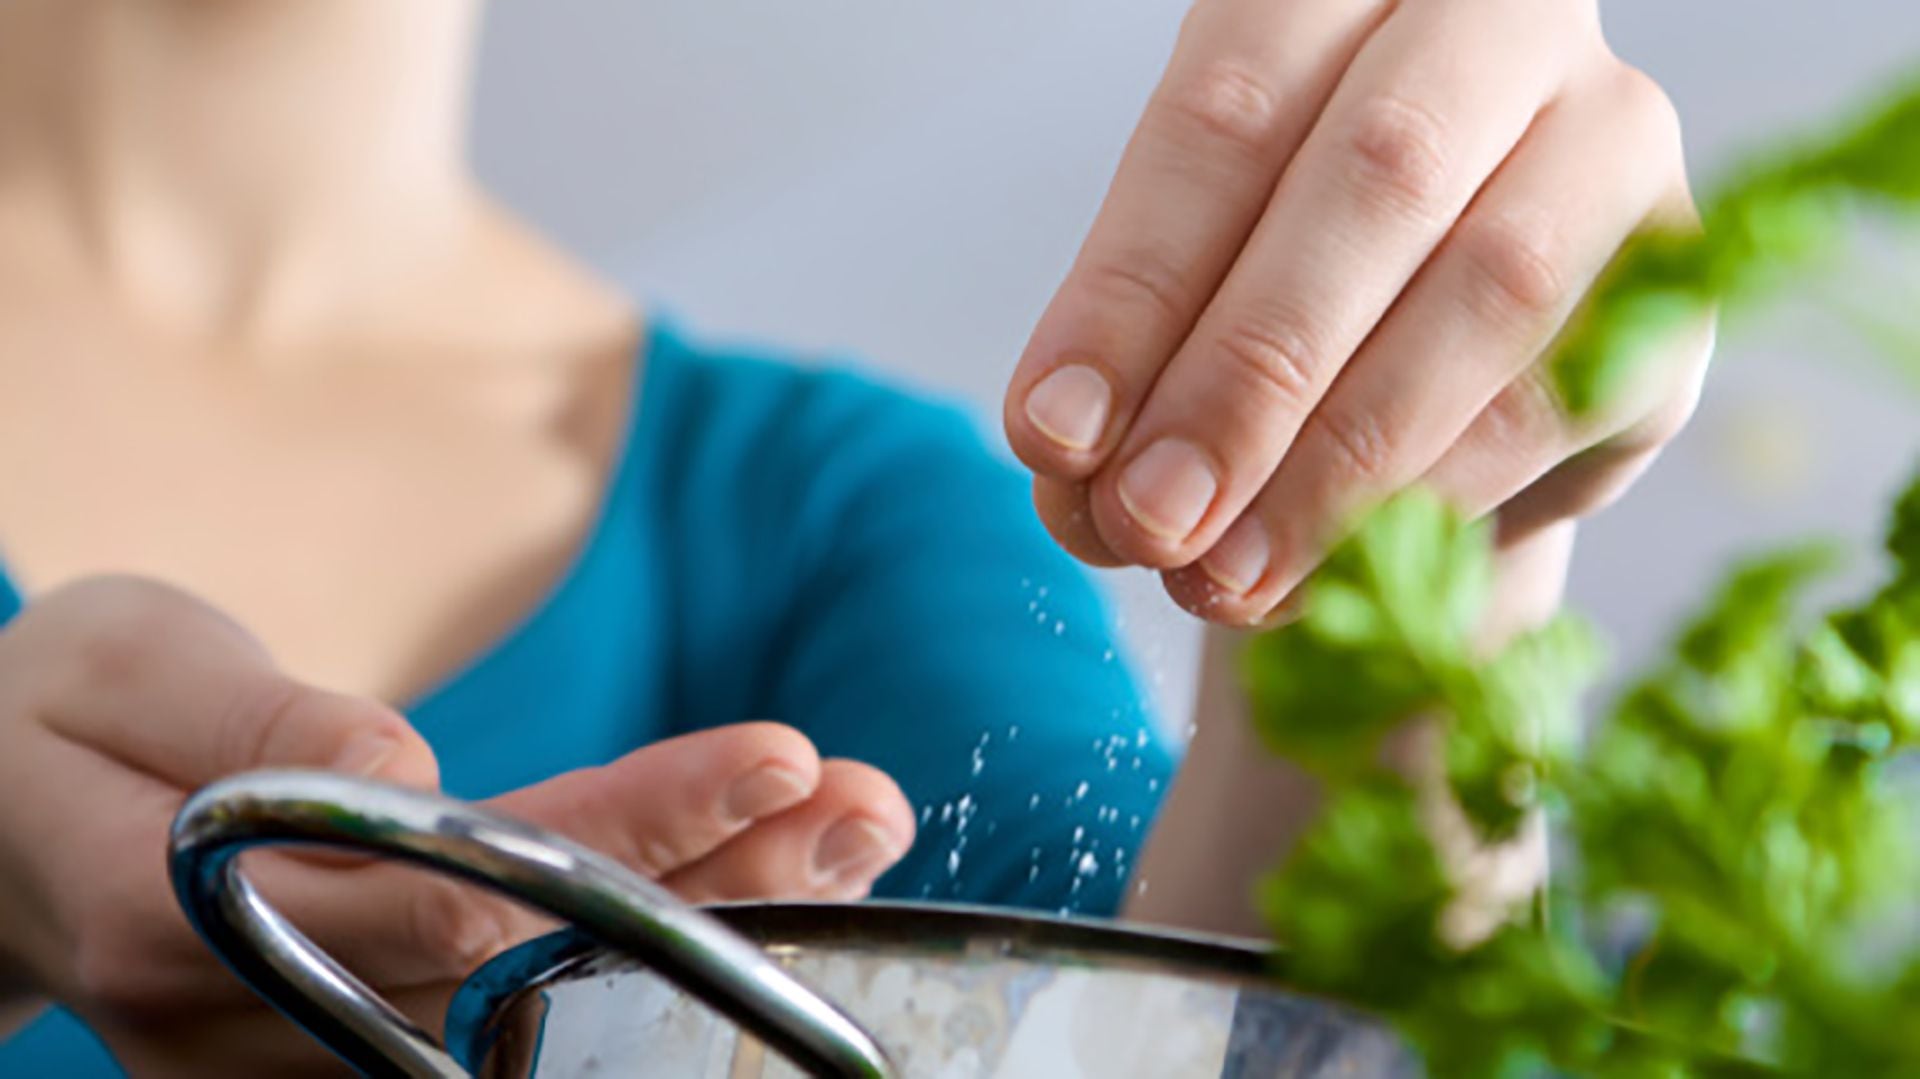 En los alimentos la sal realza el sabor; ayuda a la conservación y a mejorar la textura y la seguridad de los alimentos/Archivo Getty